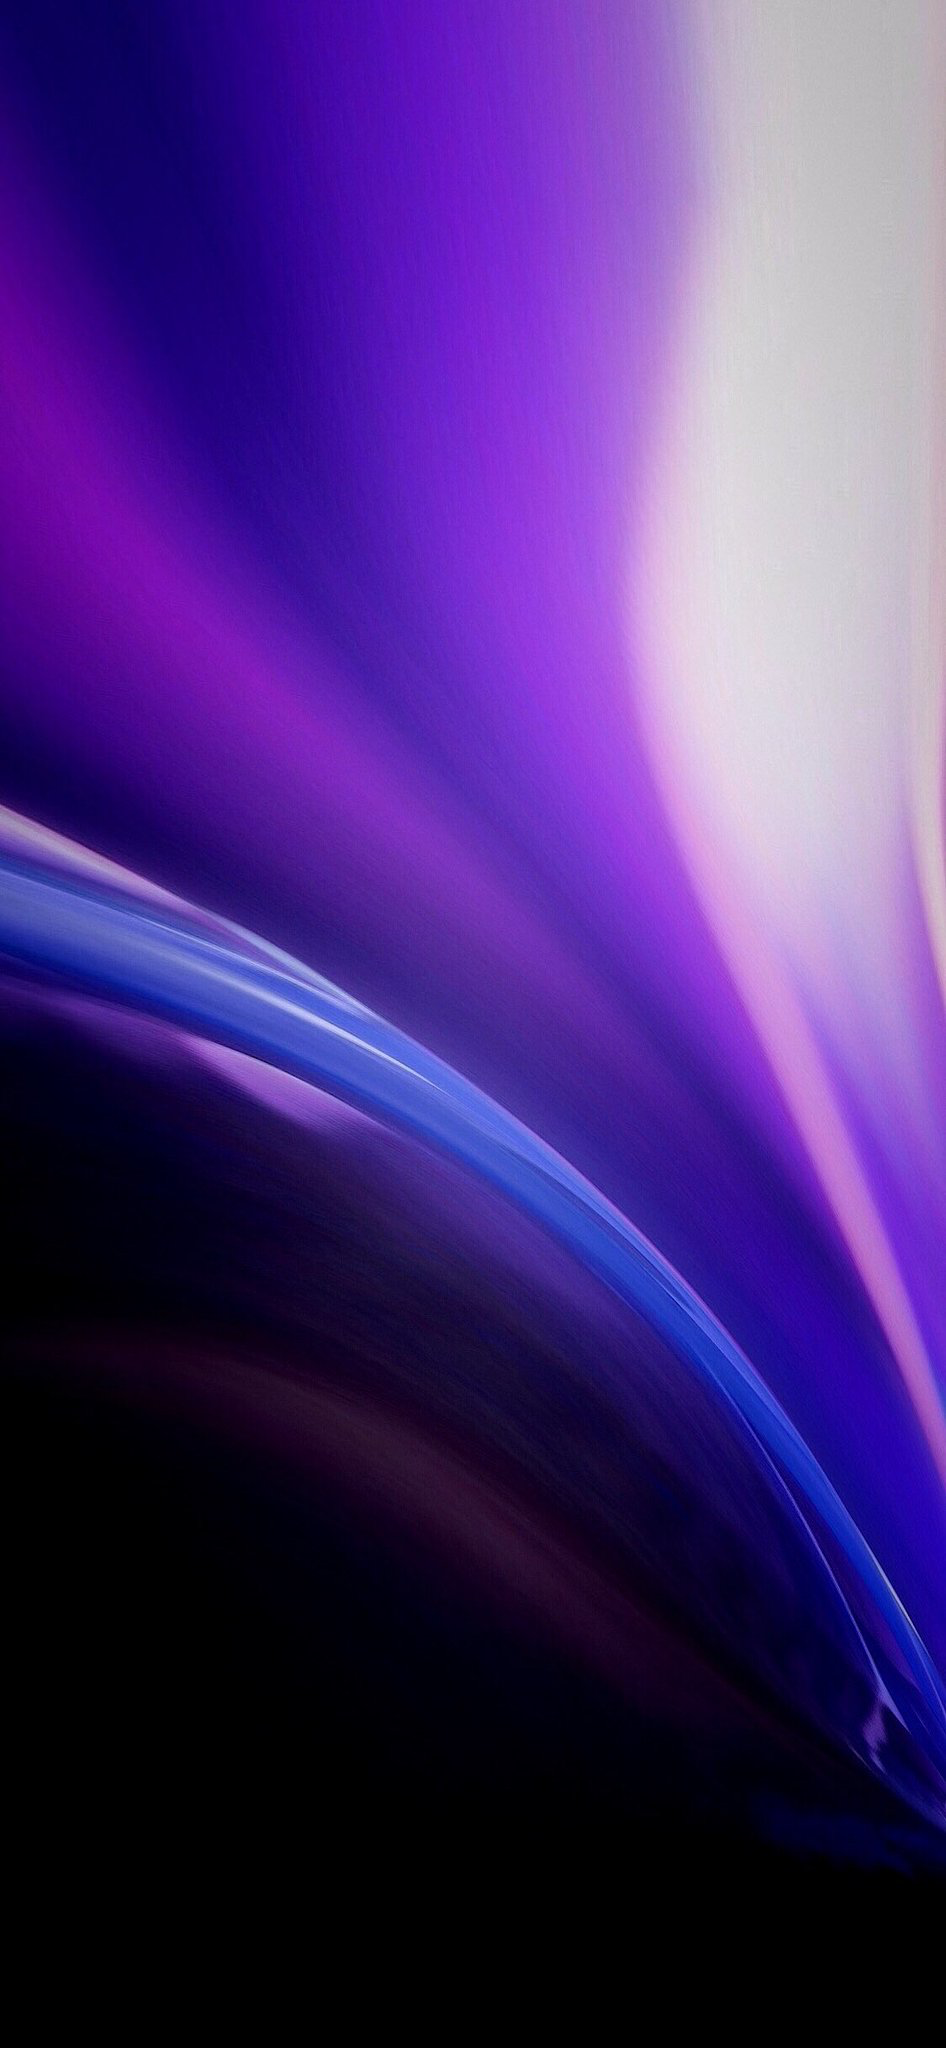 Hình nền táo màu tím nước chảy sẽ khiến cho chiếc máy tính của bạn trở nên đẹp hơn. Hãy thưởng thức mỗi thước hình ảnh táo màu tím được thiết kế kỹ lưỡng và chất lượng cao. Bạn sẽ thích thú với cái nhìn độc đáo mà hình nền đem lại cho chiếc điện thoại của mình.